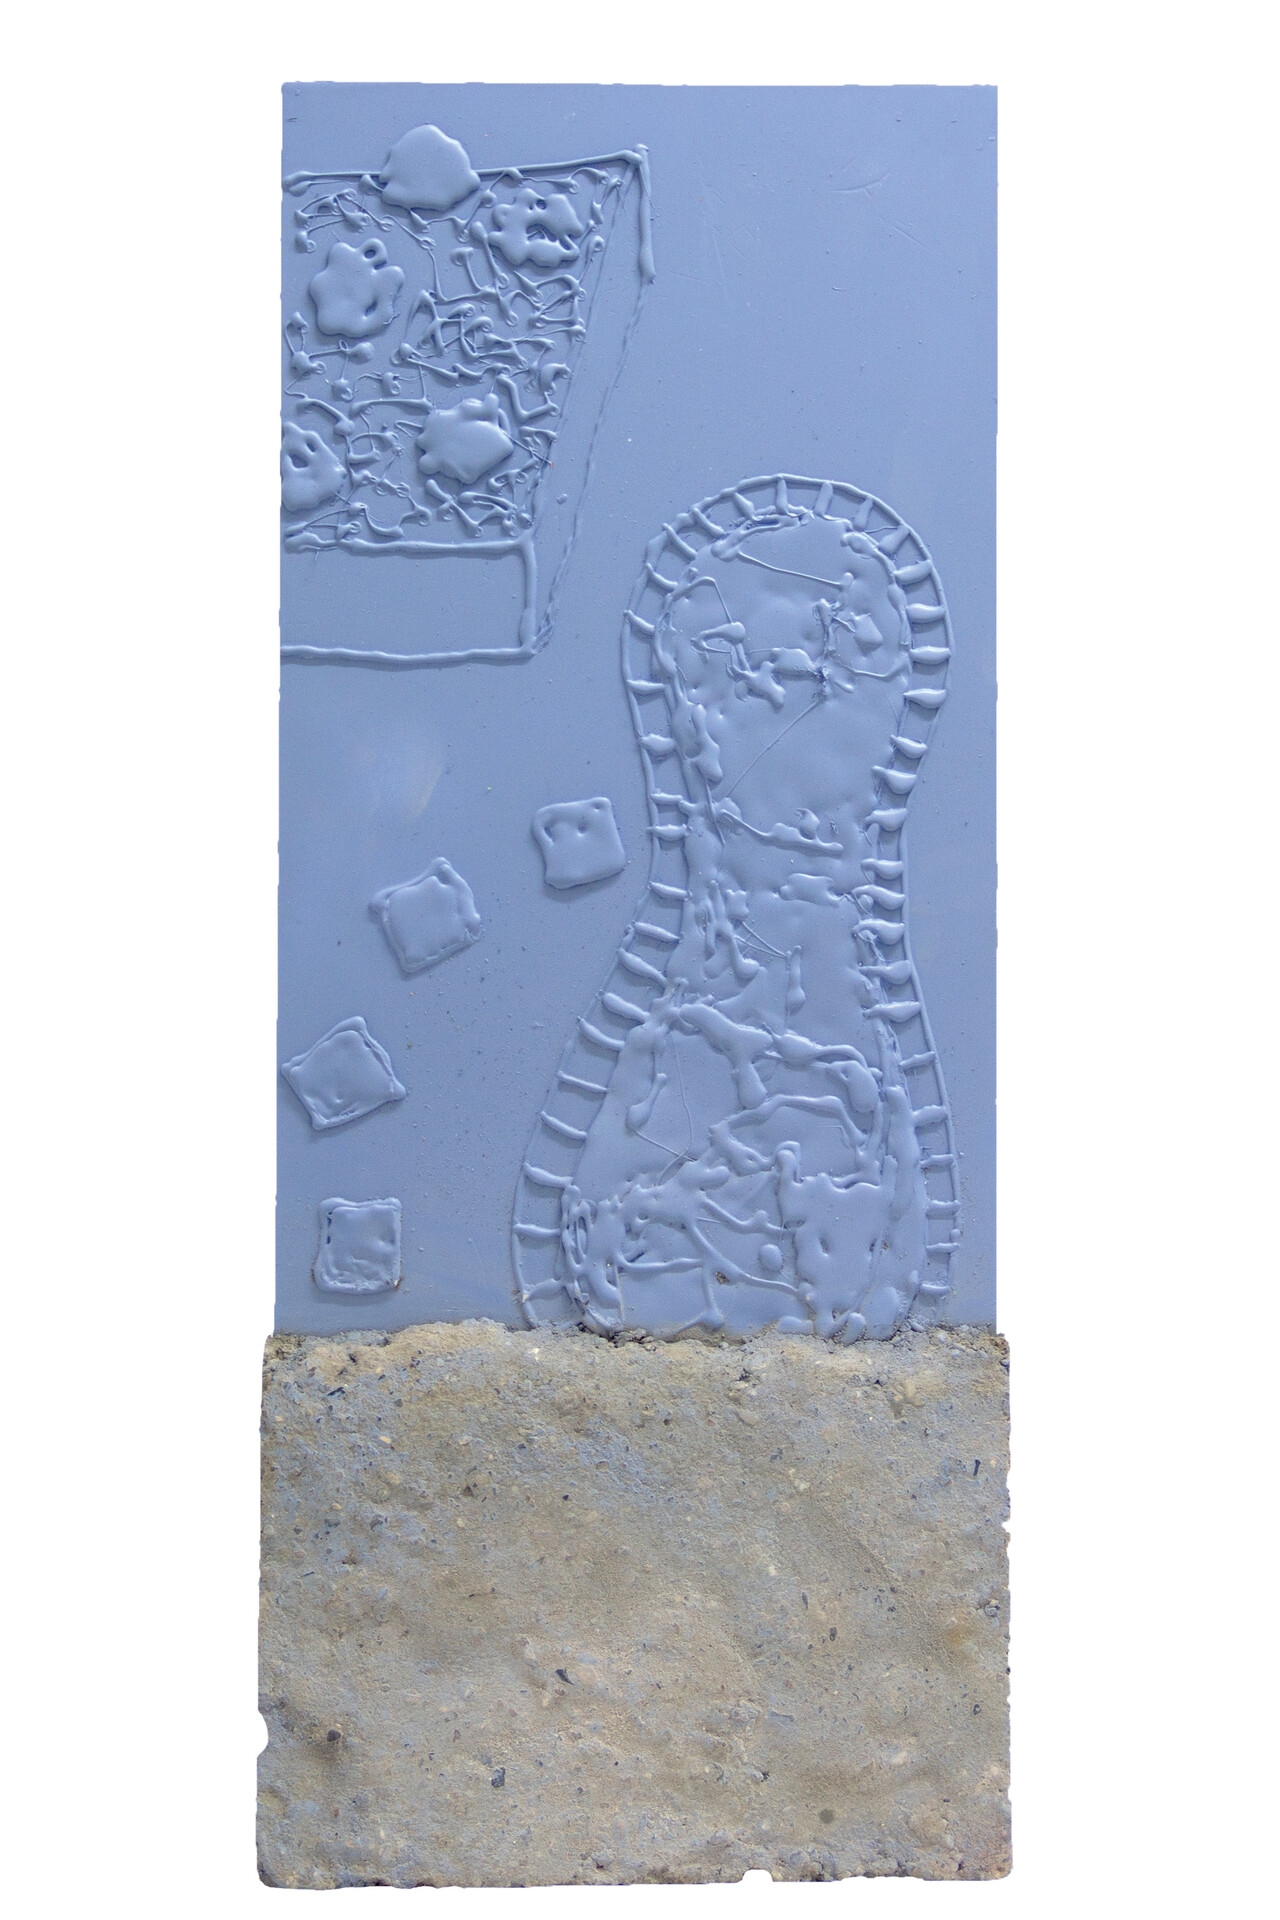 Garten 4, 72×27×4cm, 2019, Acrylic paint, Concrete, Plastic, Plexiglass